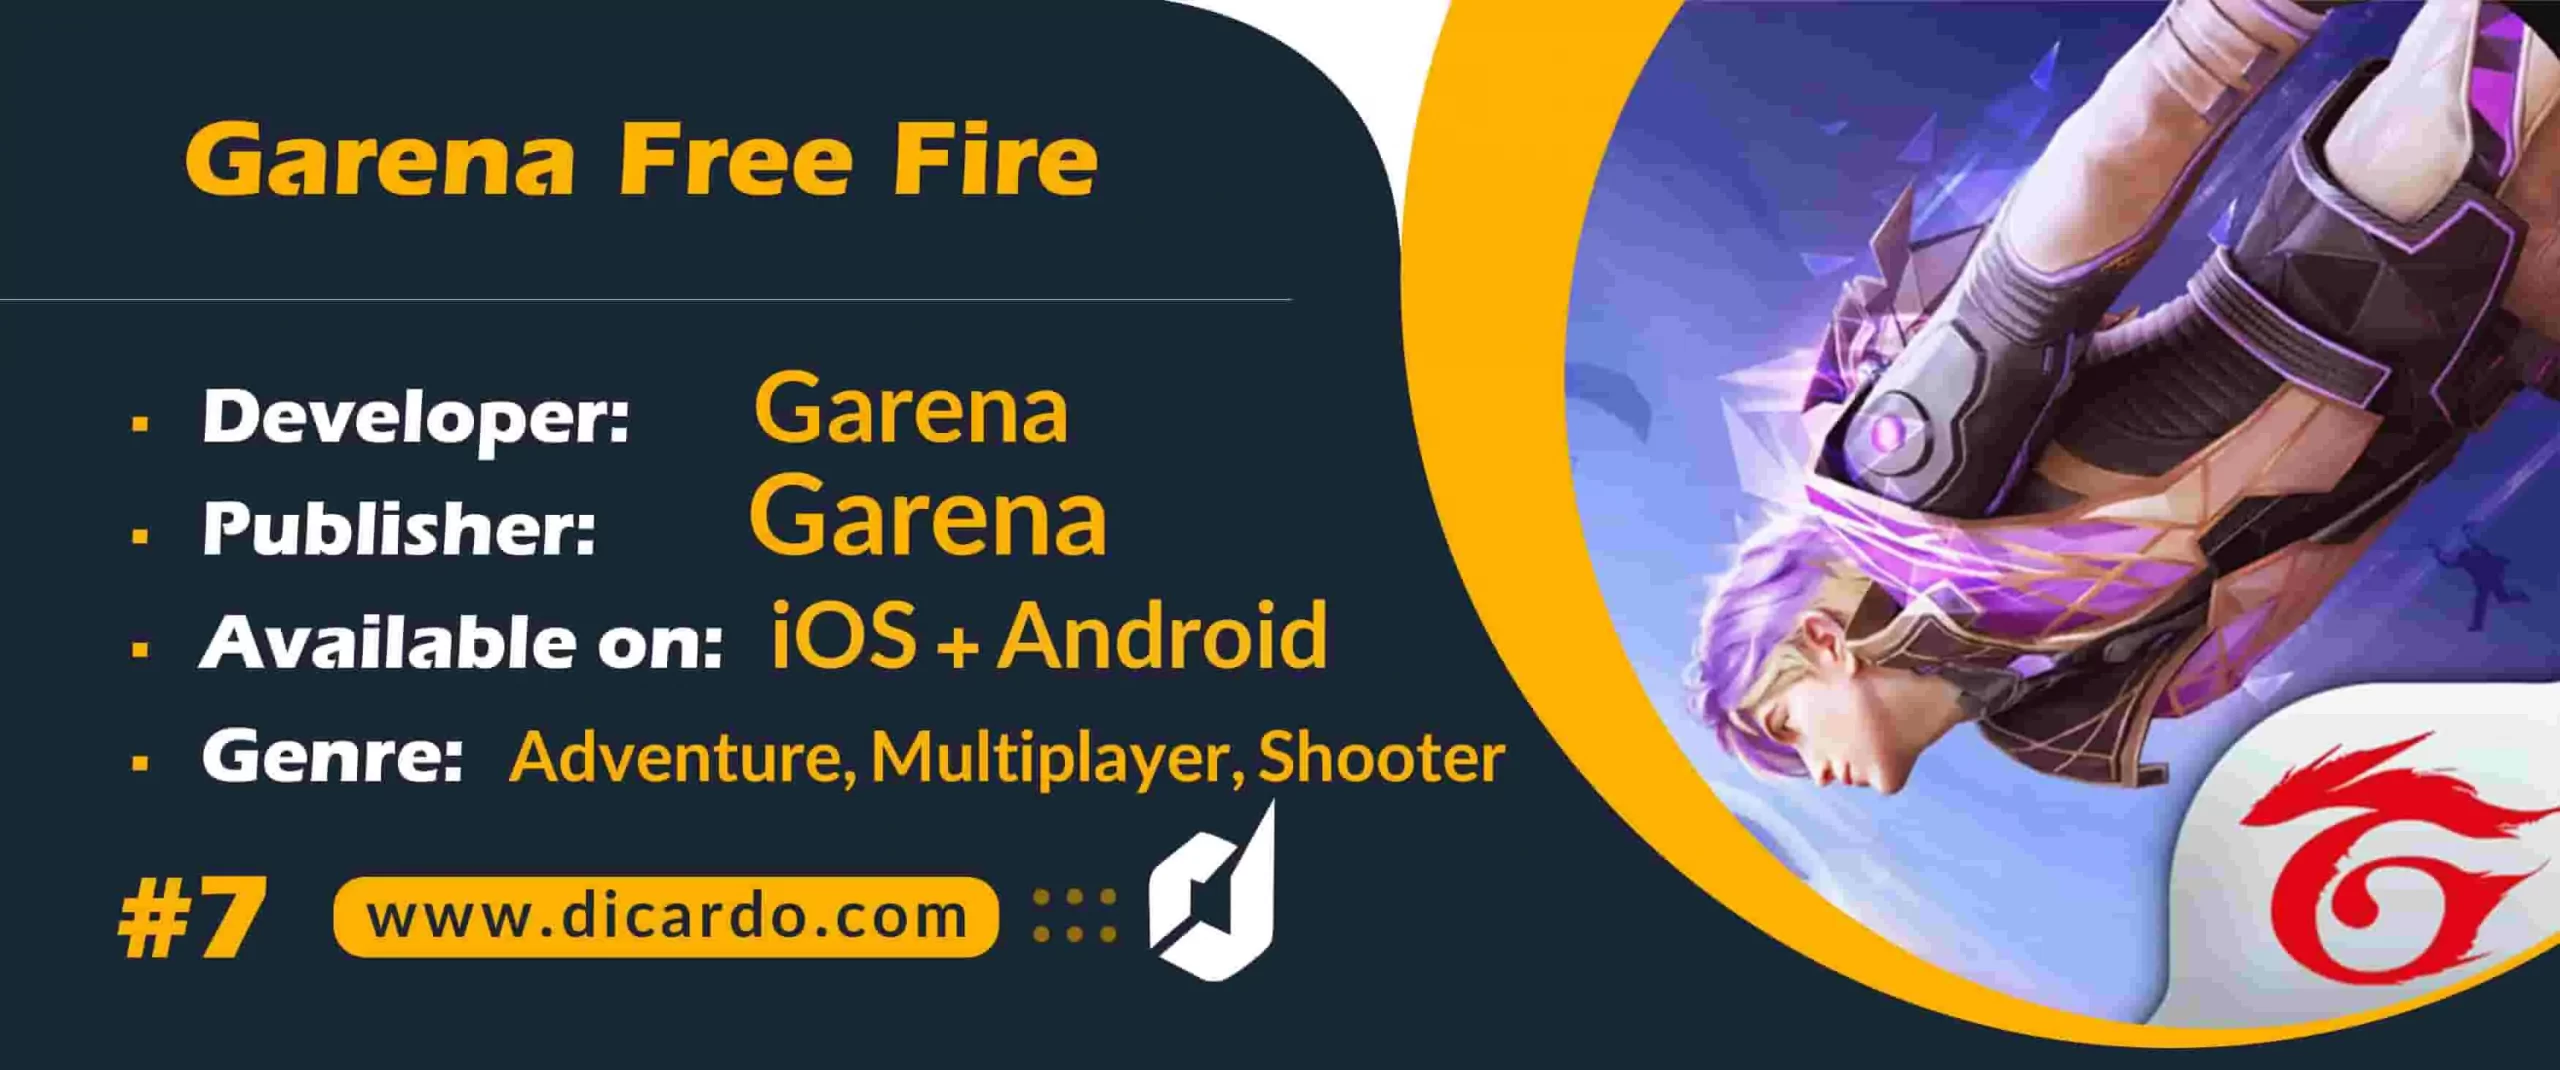 گارنا فیری فایر Garena Free Fire از محبوب ترین بازیهای شوتر موبایلی